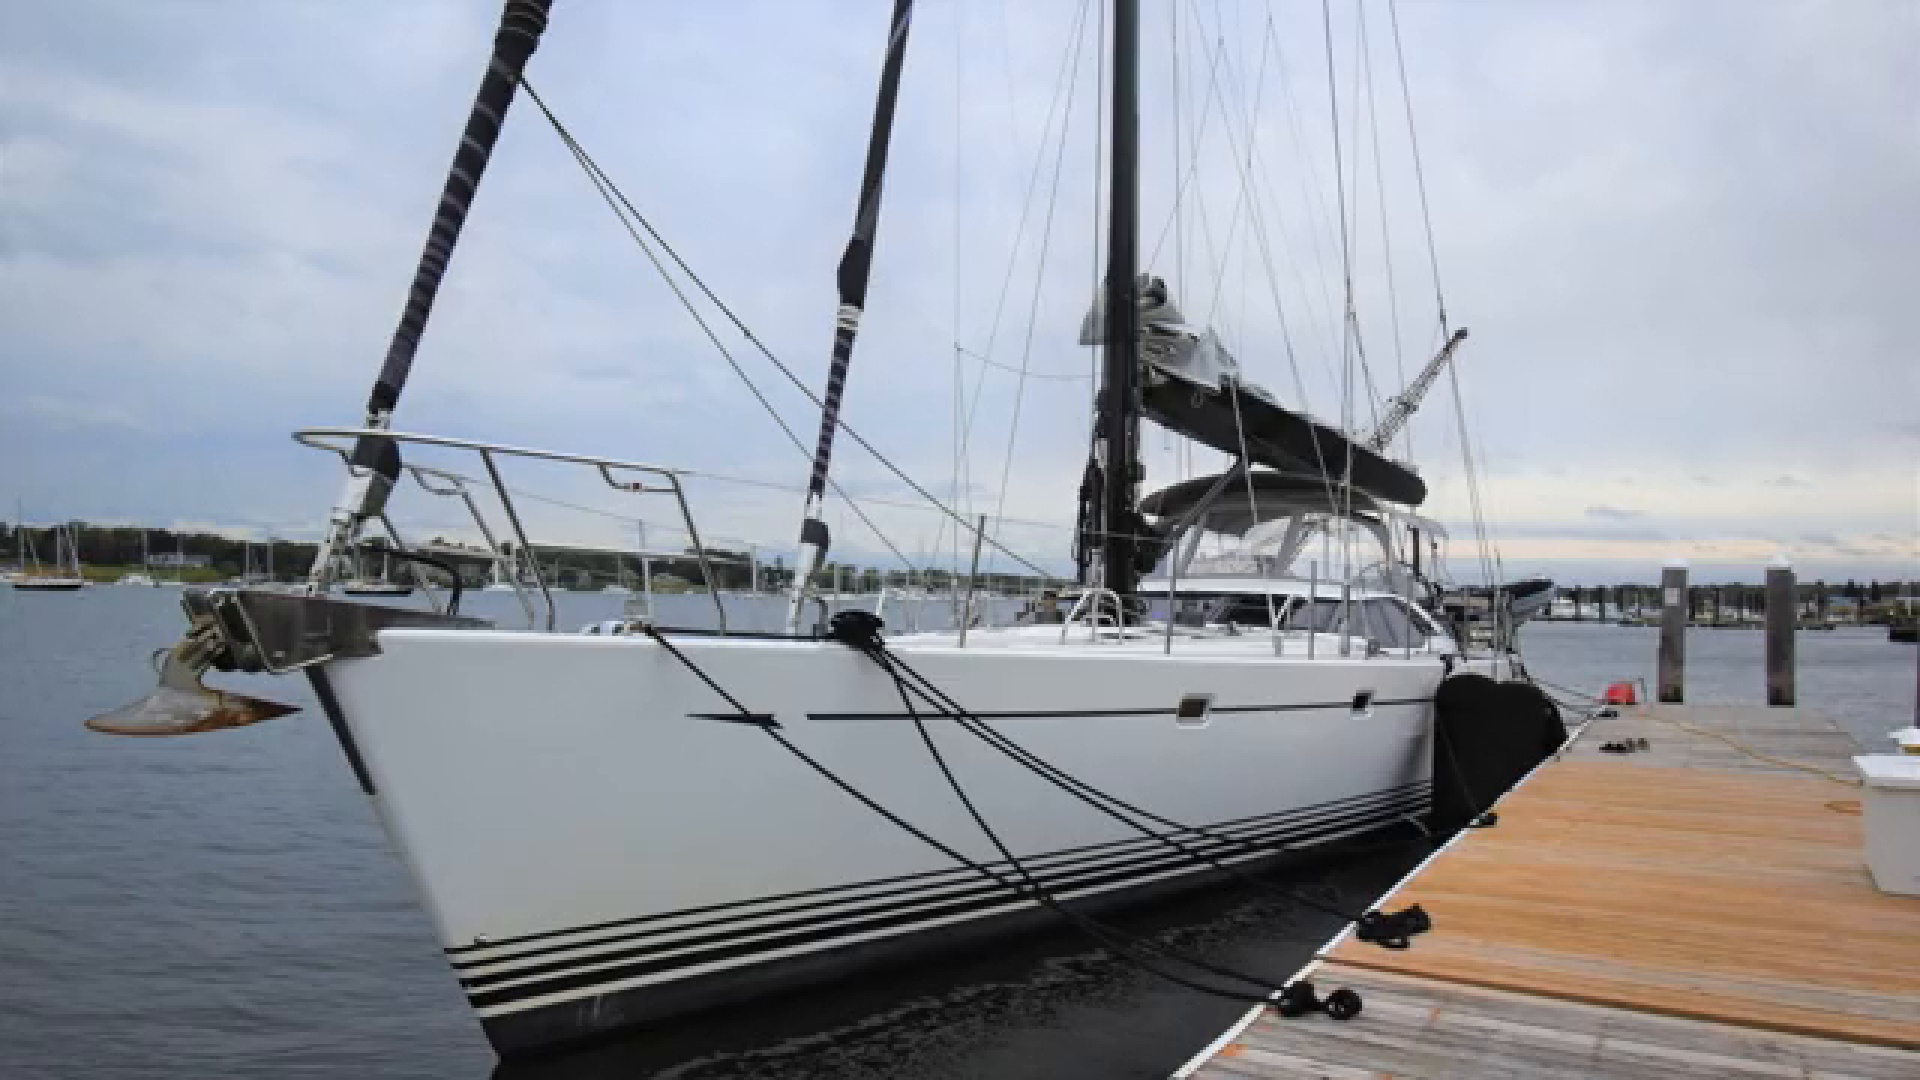 72 foot sailboat